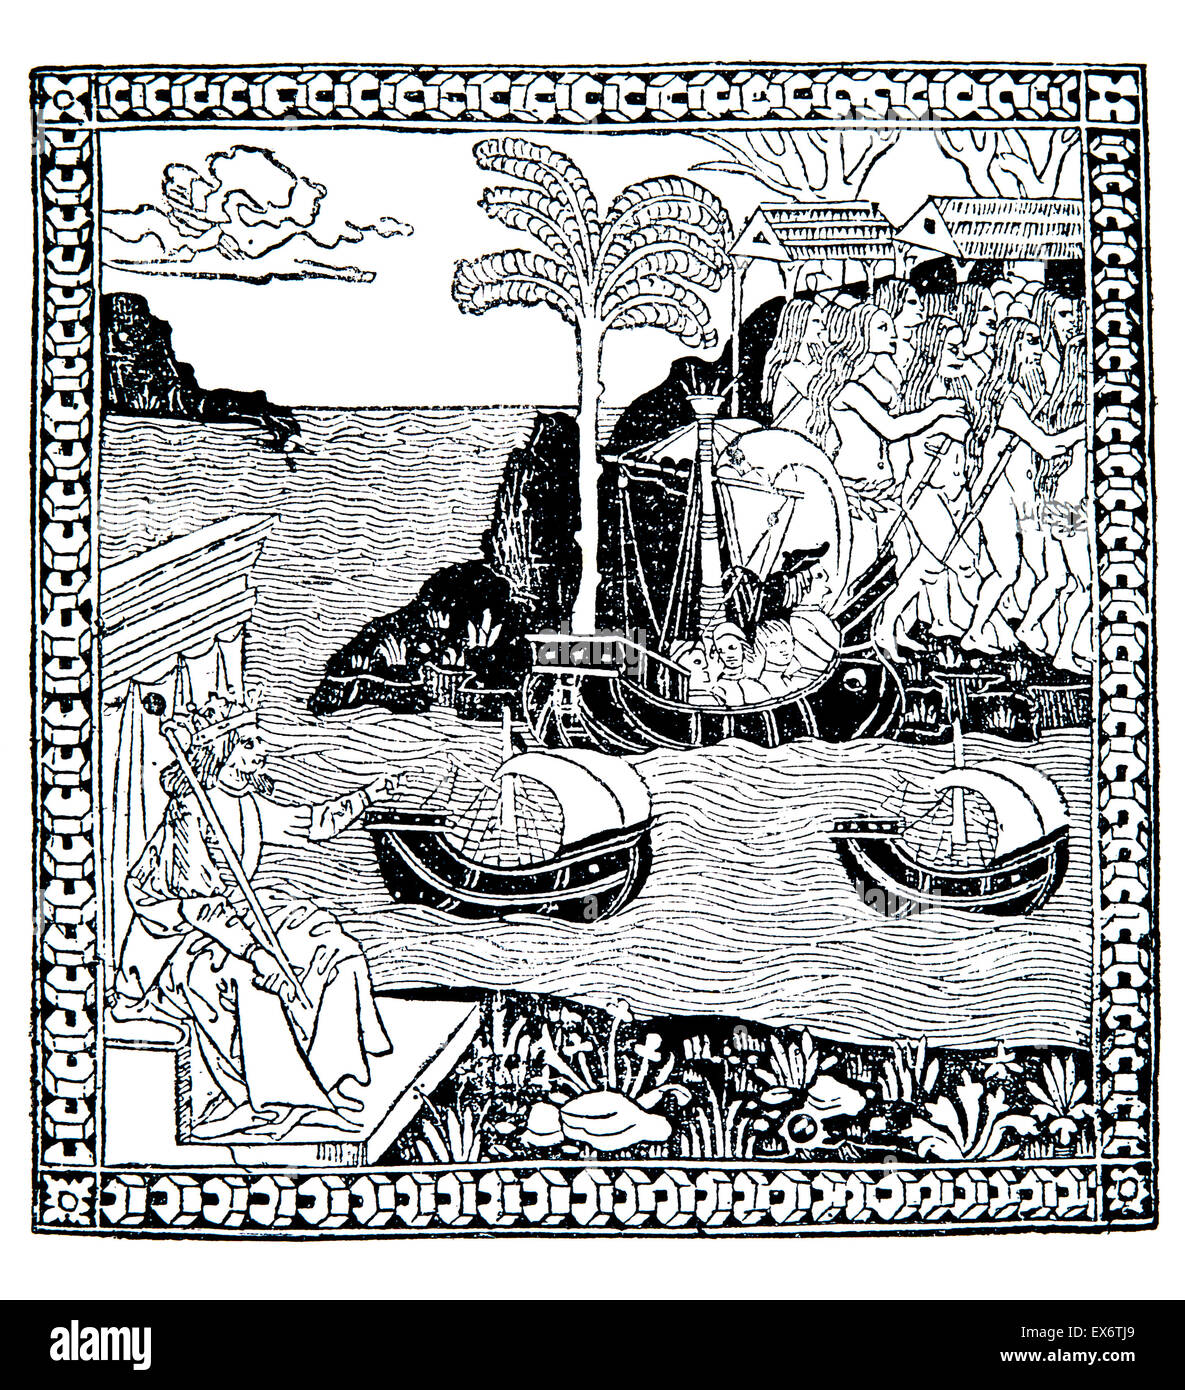 Die Entdeckung des Indes, 1493, Holzschnitt Italienisch Schule Illustration des Kolumbus Reise Stockfoto